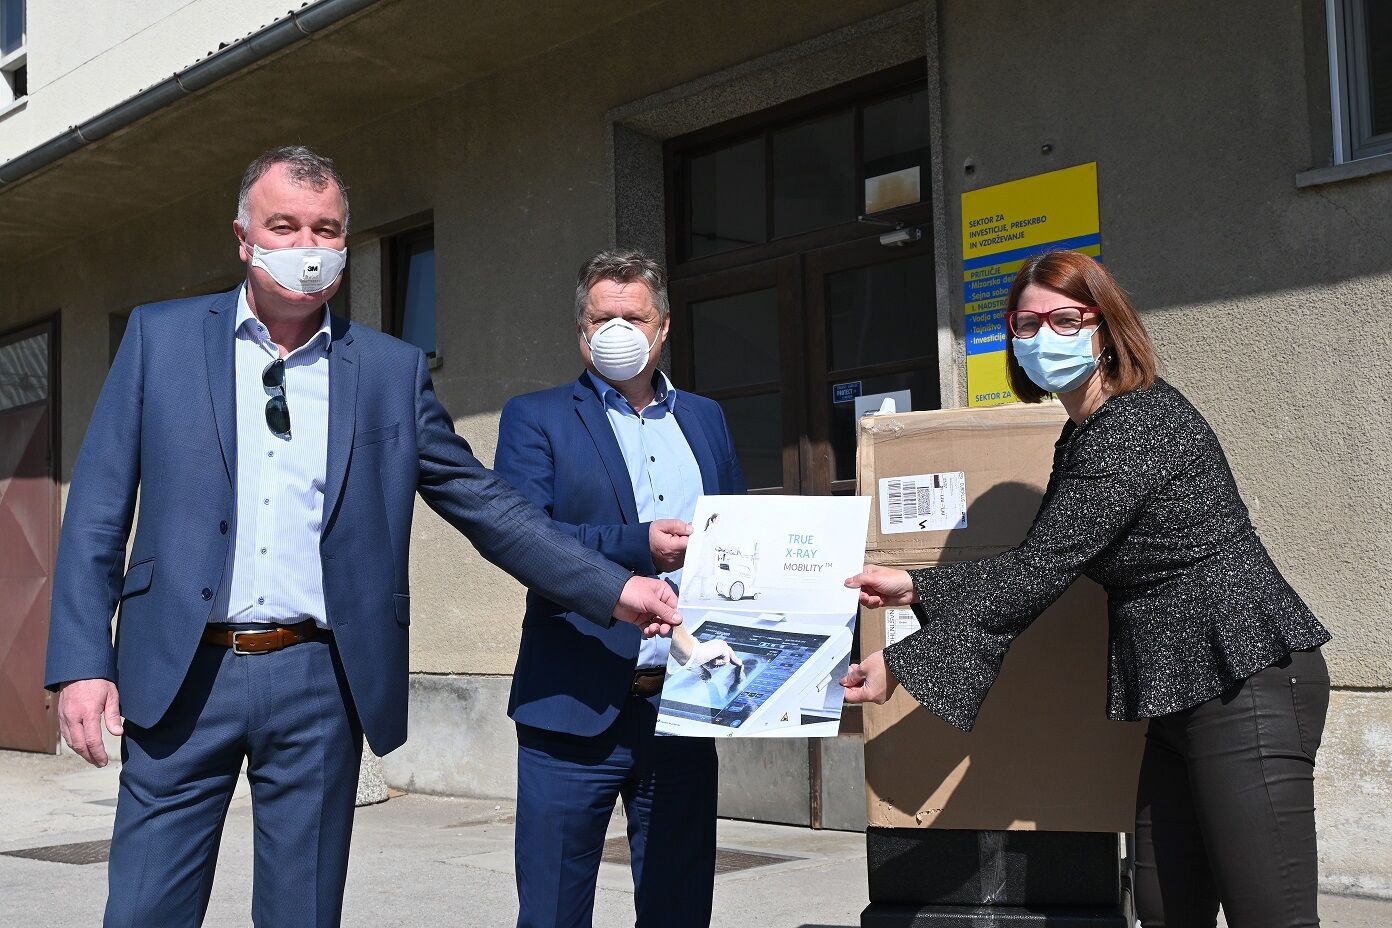 Cinkarna Celje Splošni bolnišnici Celje donirala sredstva za nakup respiratorja